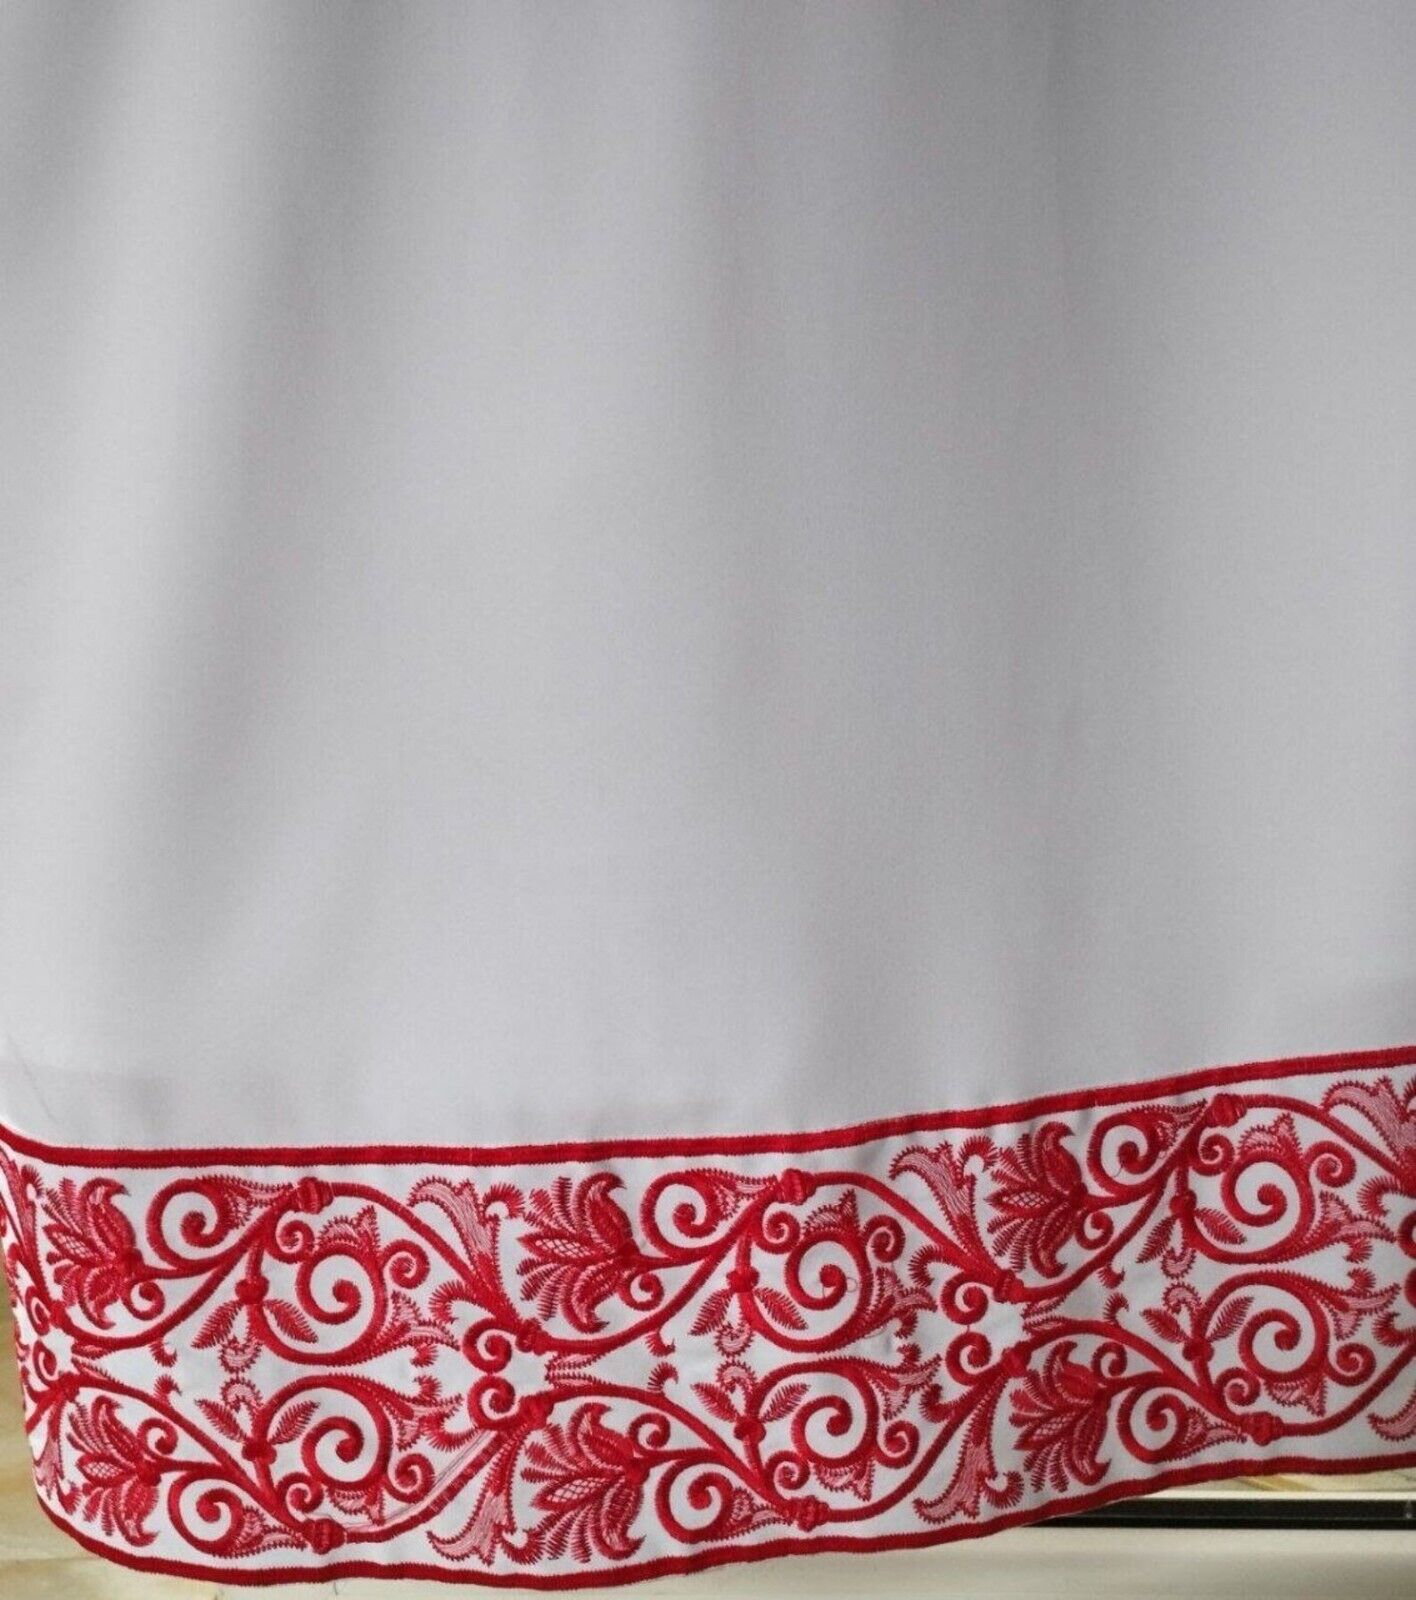 Red stykhar with embroidery, podriznik, Orthodox Greek style vestment